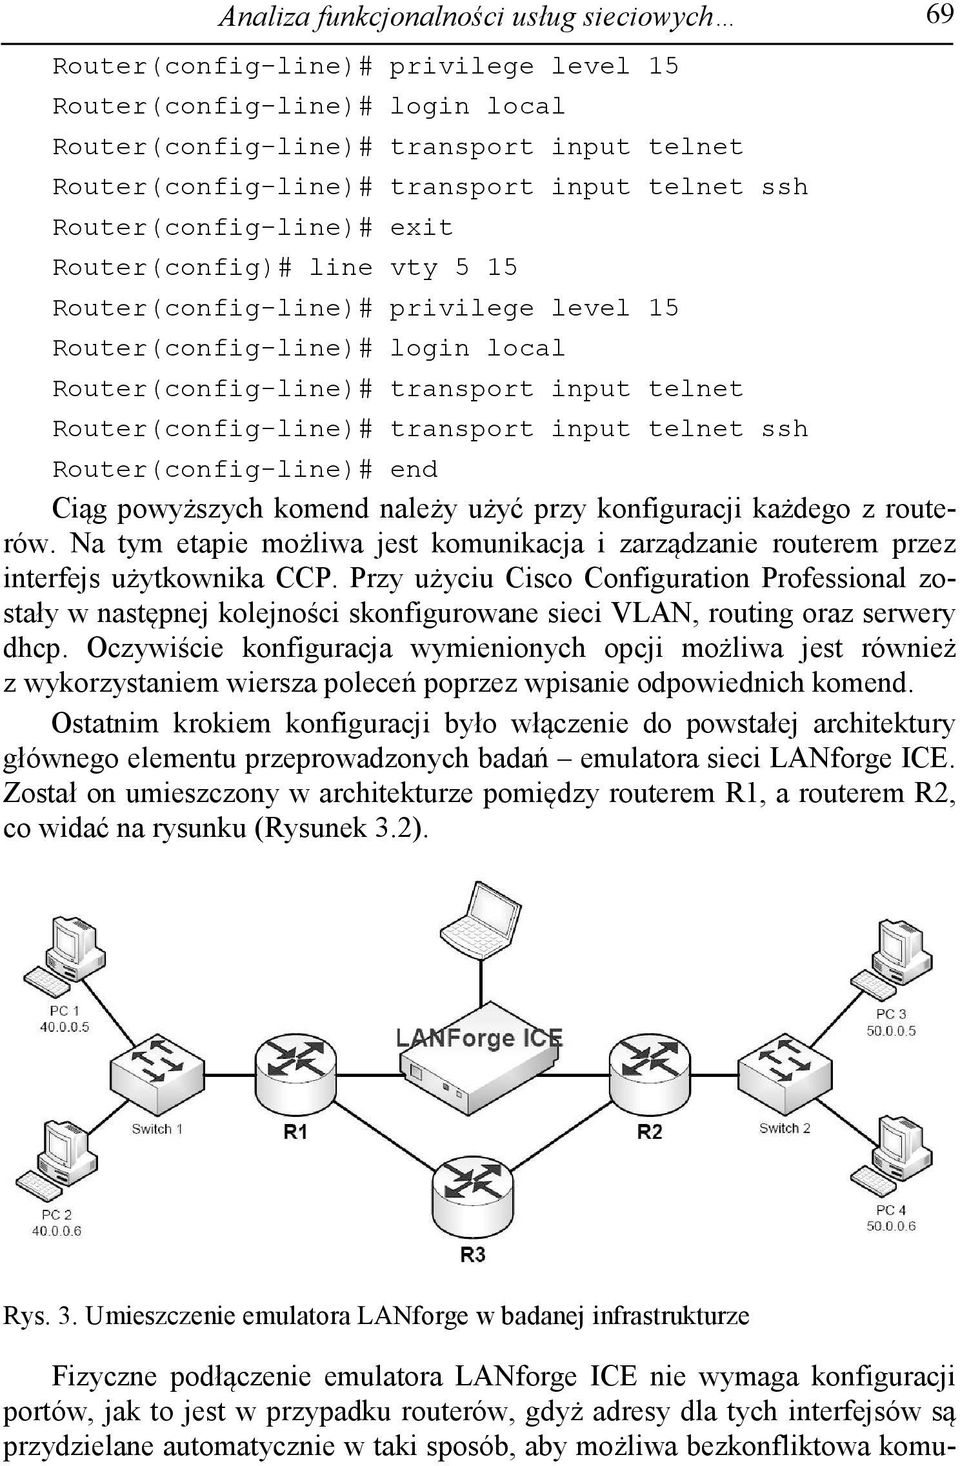 Router(config-line)# transport input telnet ssh Router(config-line)# end Ciąg powyższych komend należy użyć przy konfiguracji każdego z routerów.